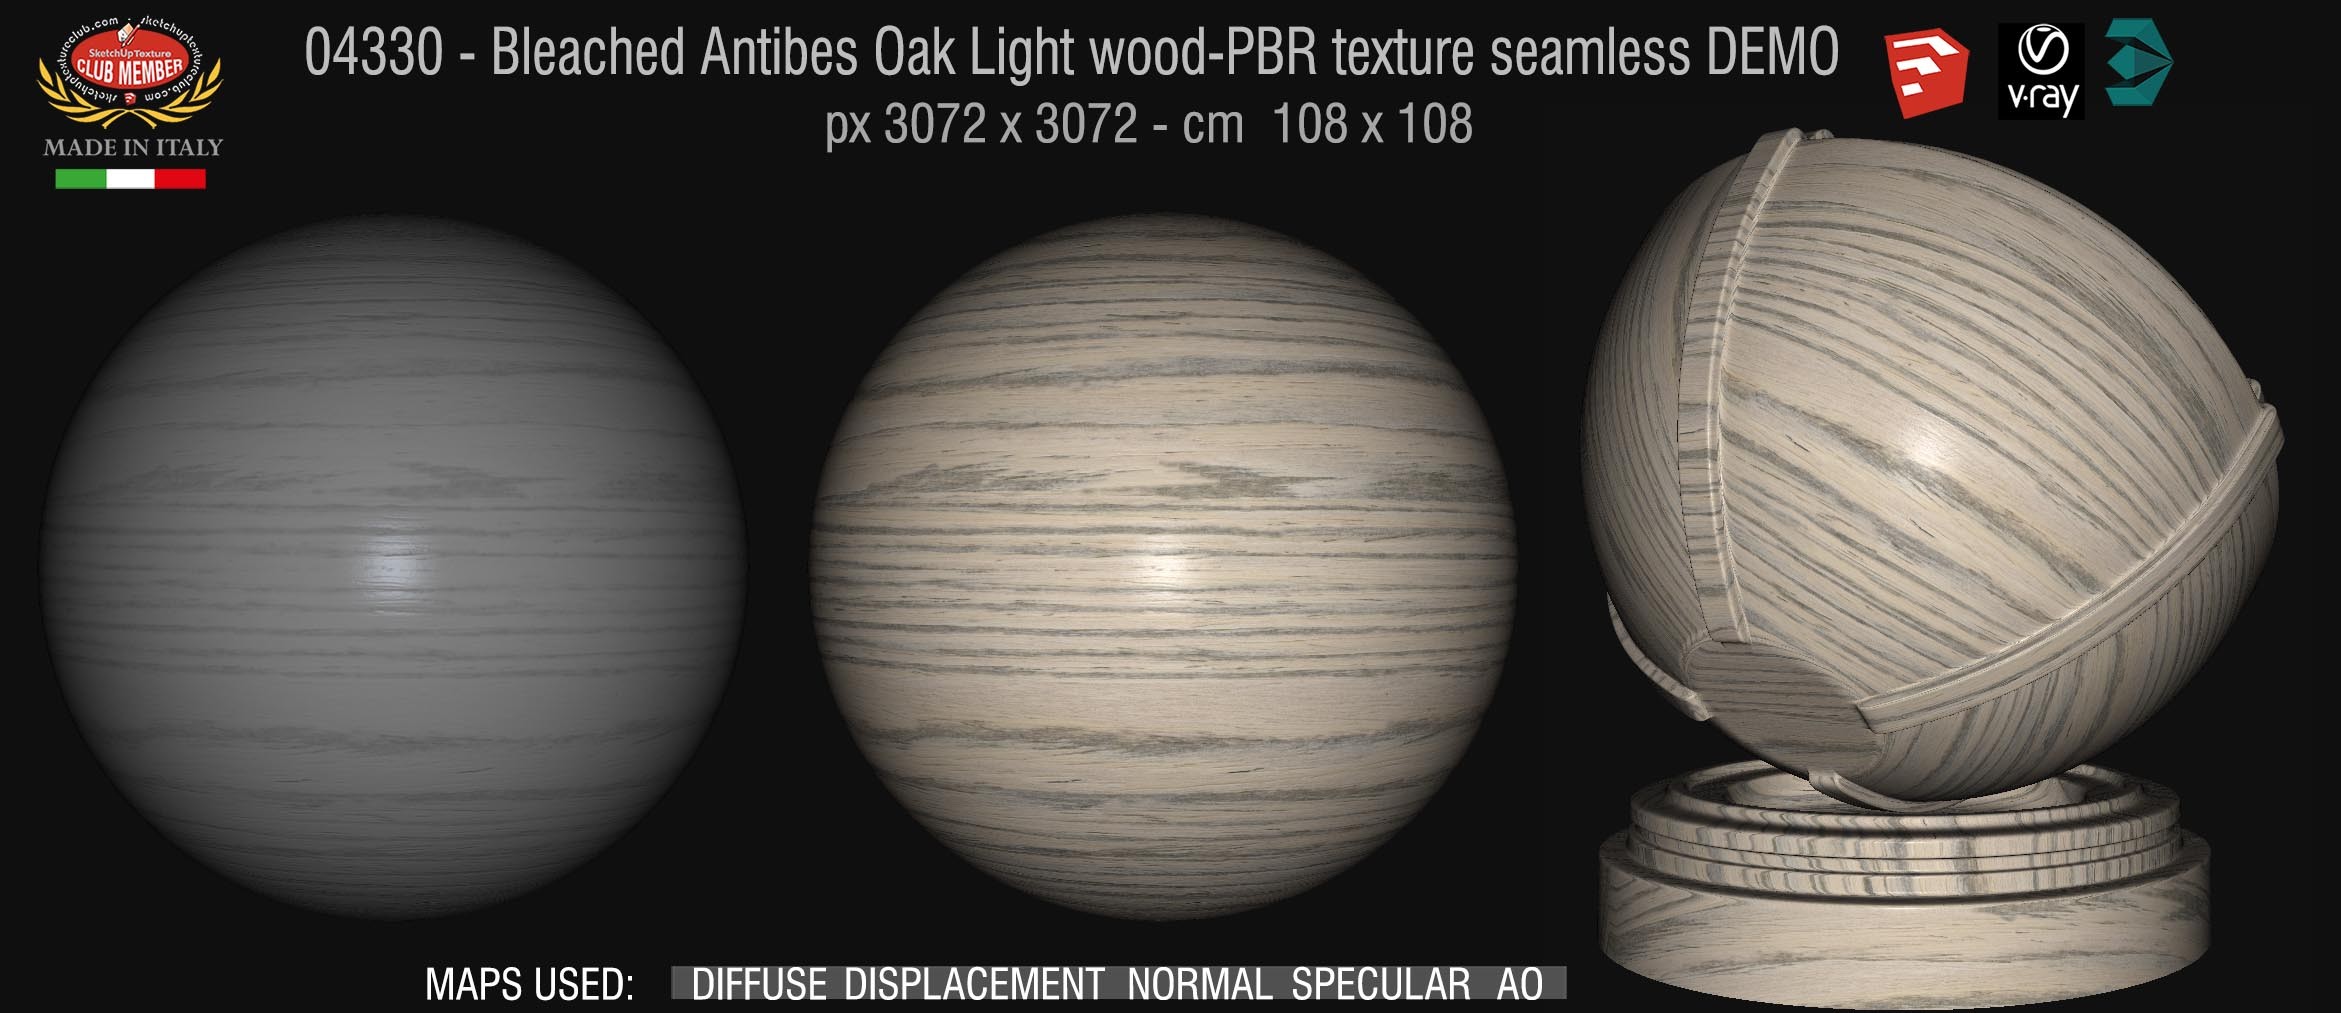 04330 Bleached Antibes Oak Light wood-PBR texture seamless DEMO